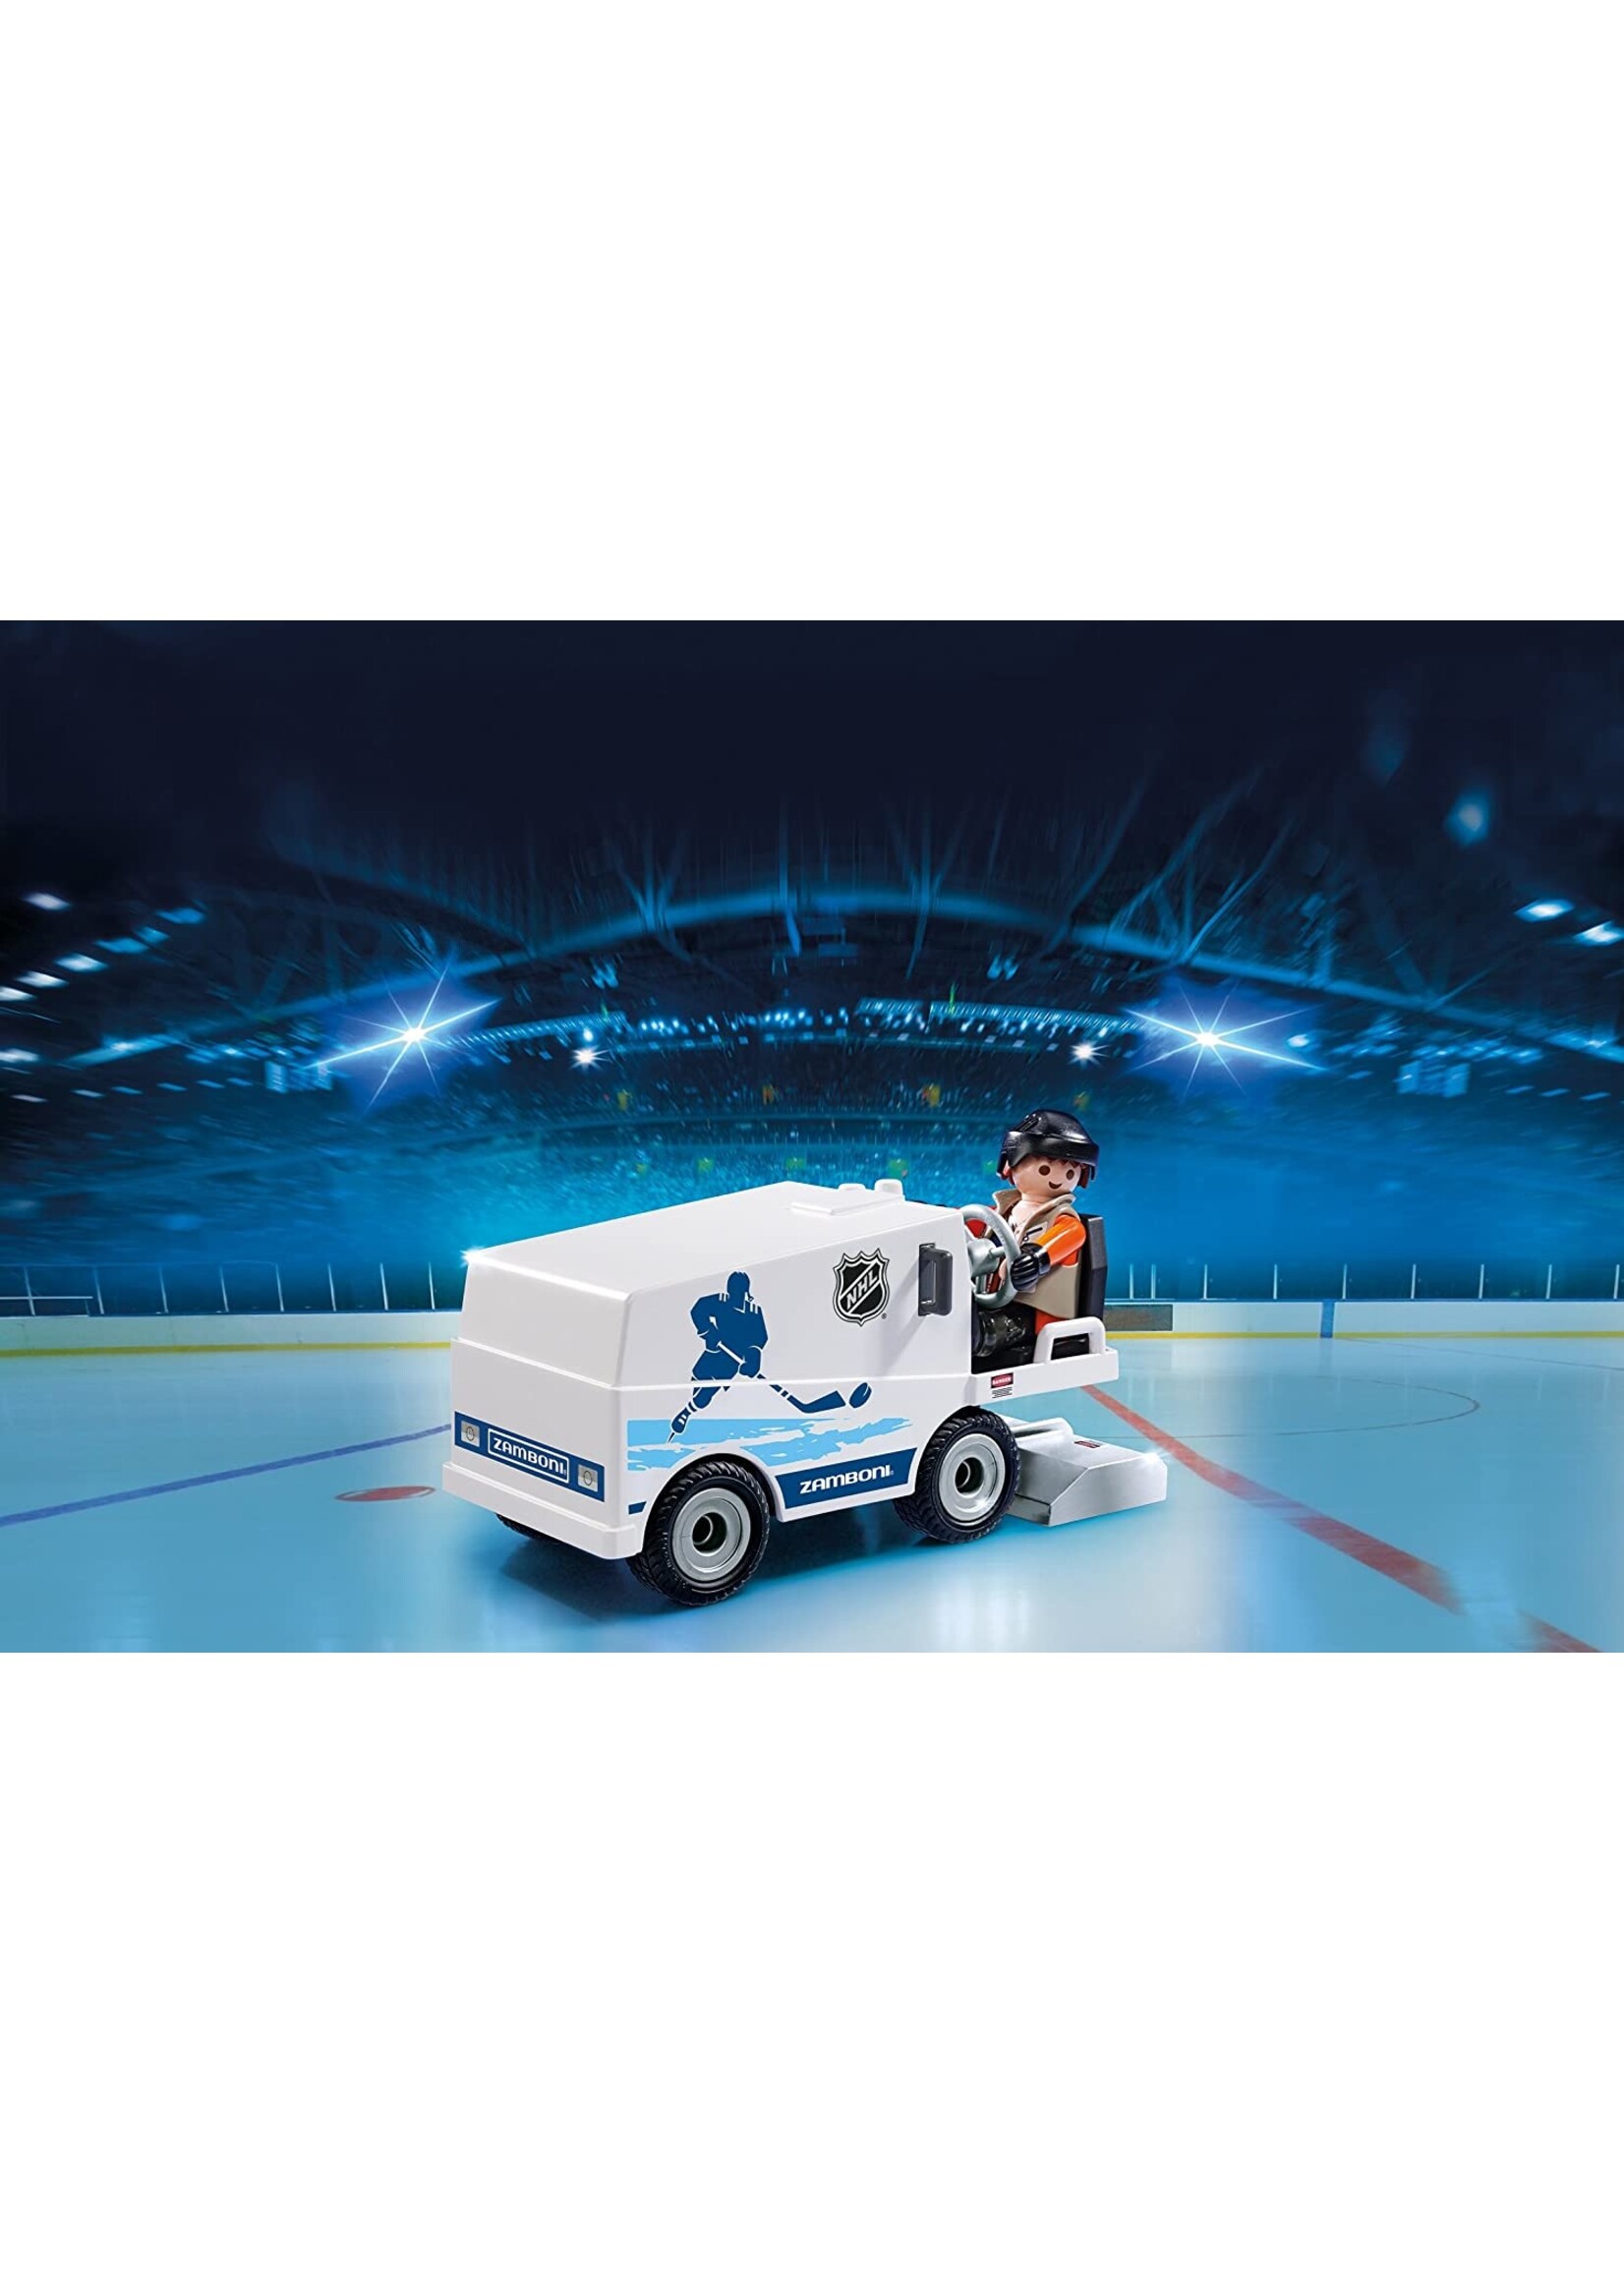 Playmobil 9213 - NHL Zamboni Machine